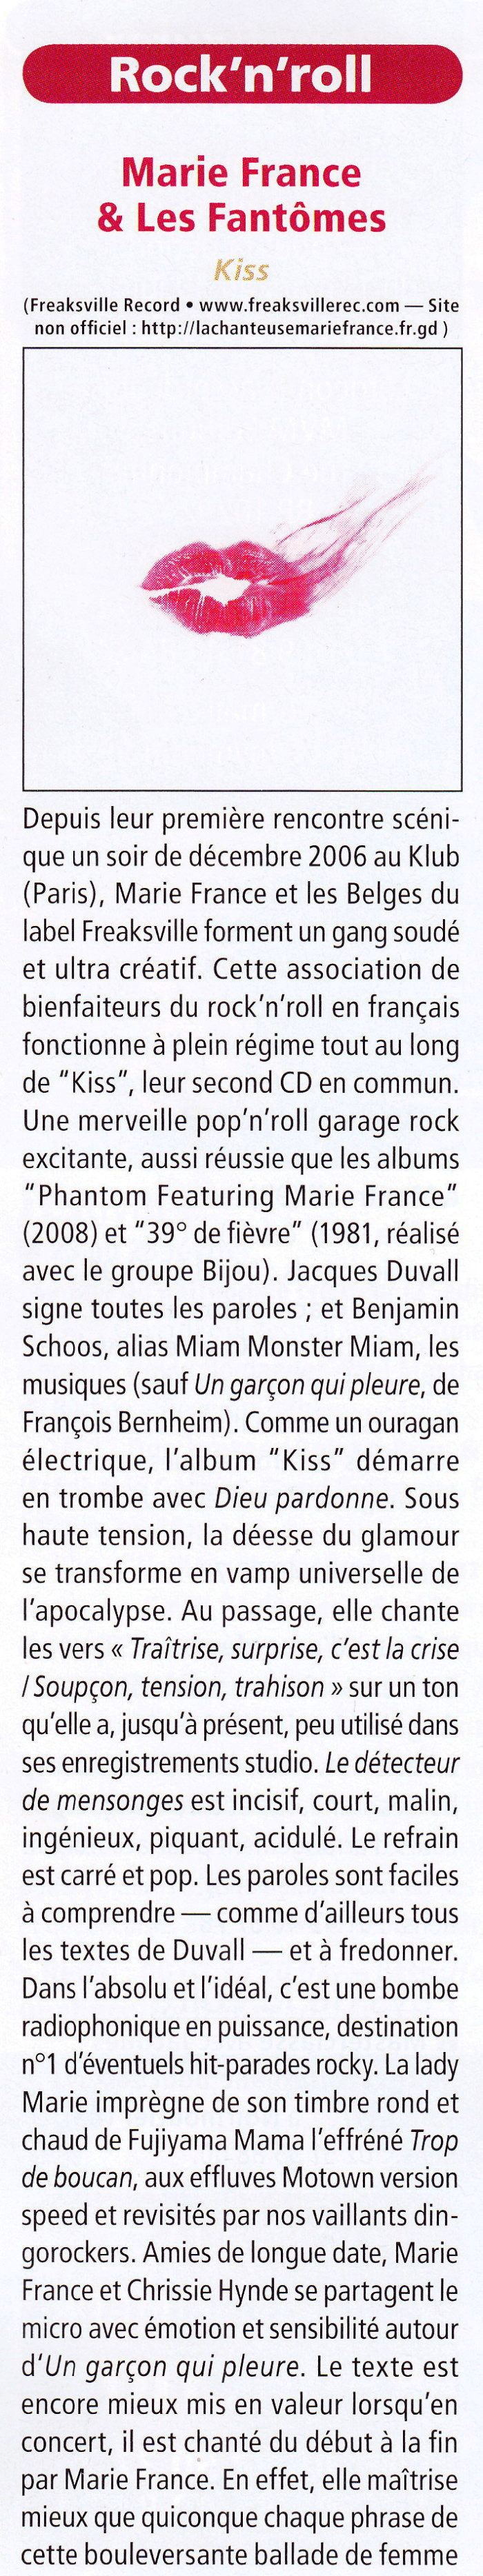 "KISS", le nouvel album CD de MARIE FRANCE & LES FANTOMES (Freaksville Record, 2012) 1201250908461423619347295